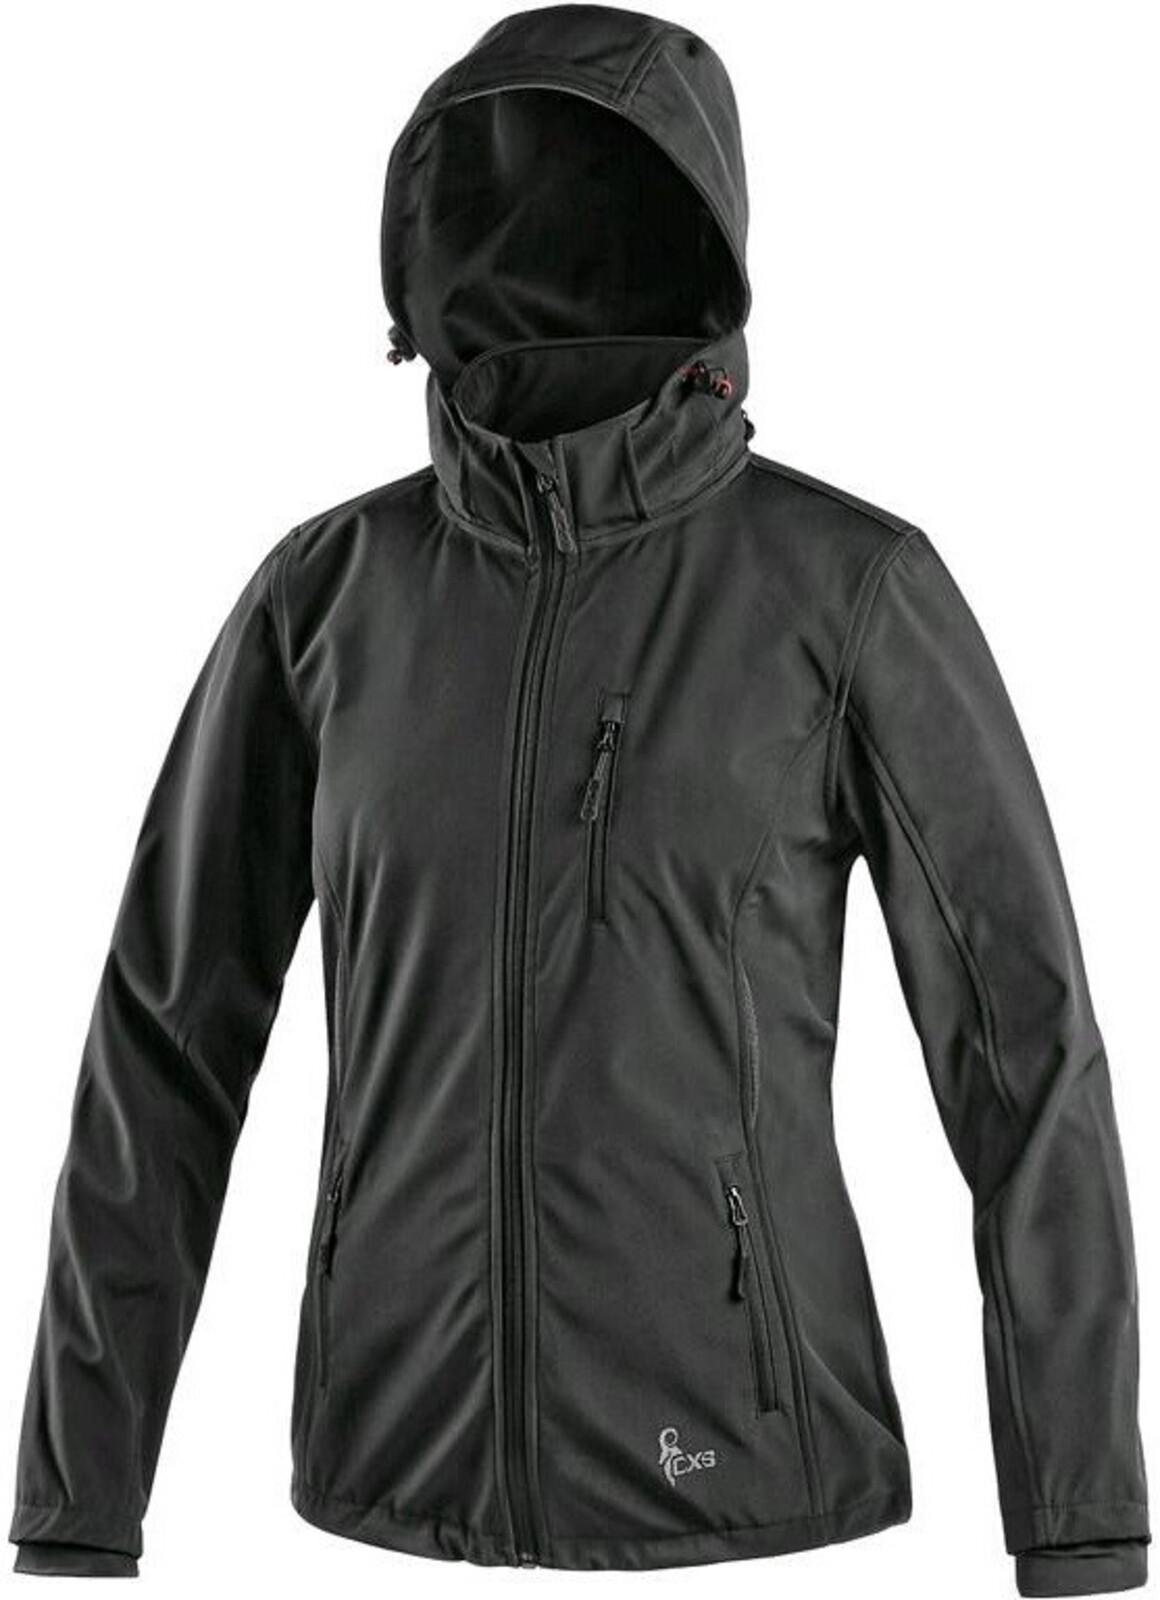 Dámska softshellová bunda CXS Digby - veľkosť: 4XL, farba: čierna